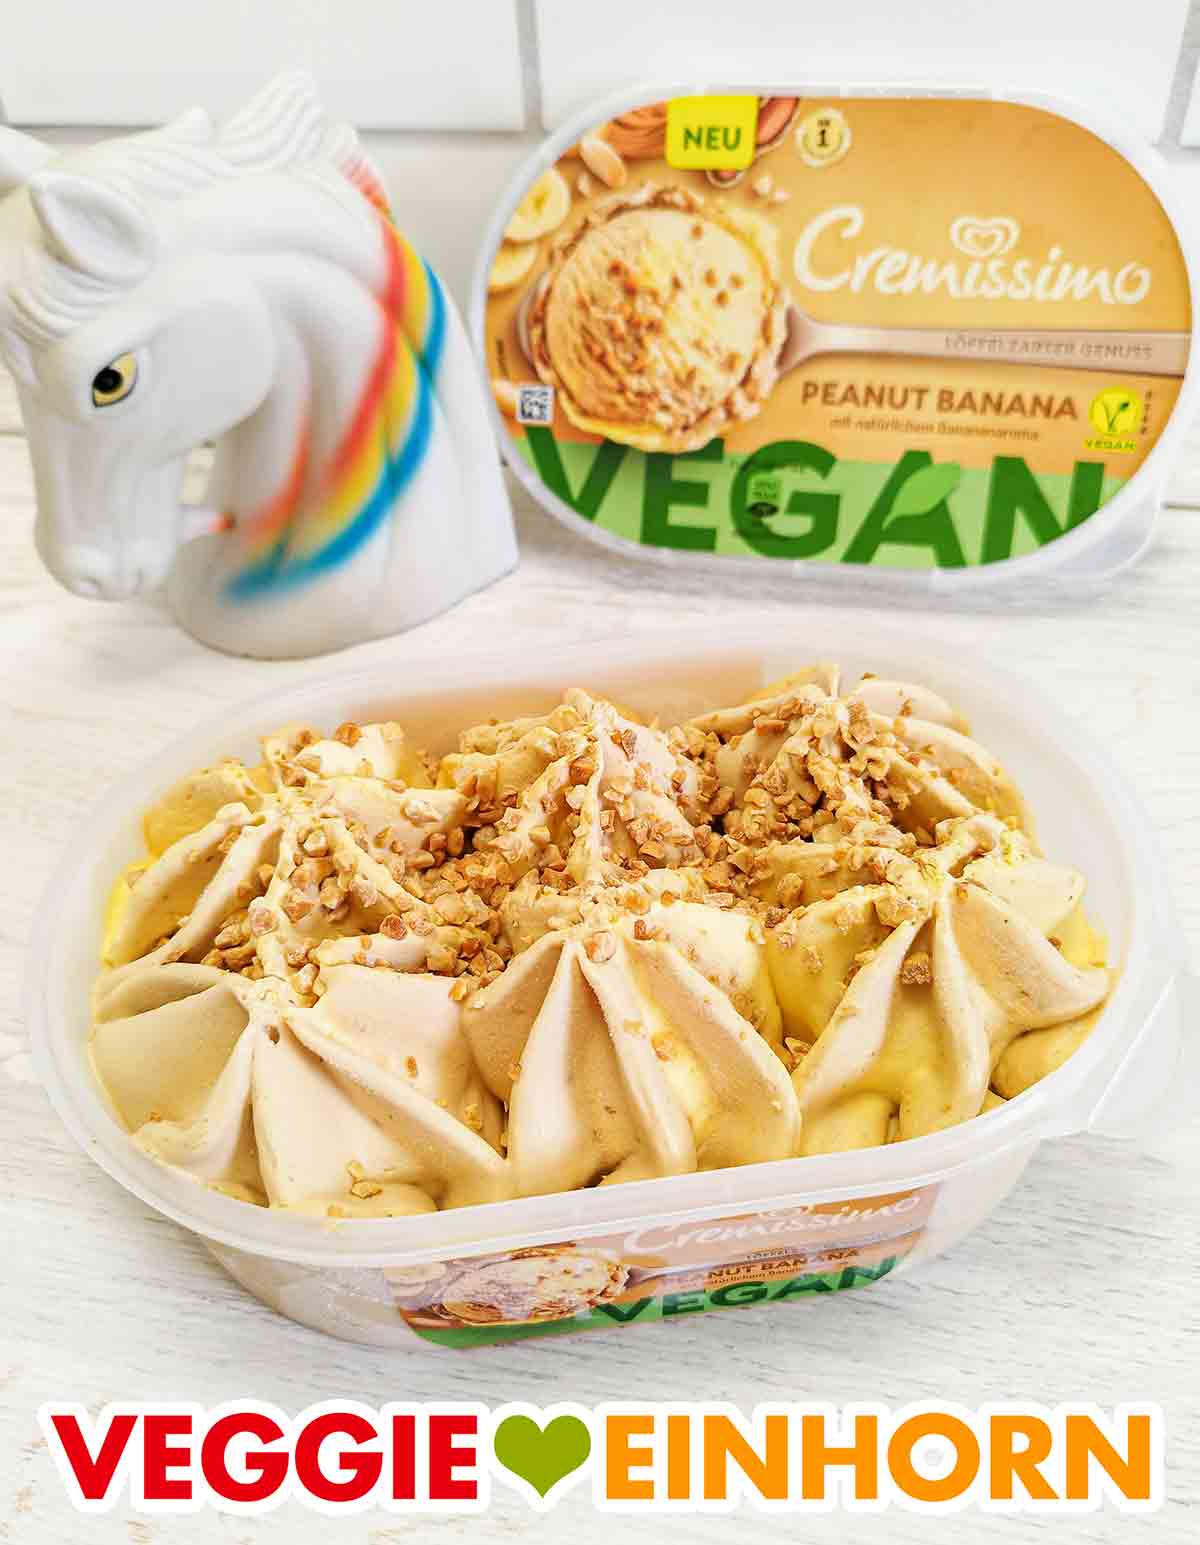 Veganes Erdnuss Eis und Bananen Eis in der Packung von Cremissimo